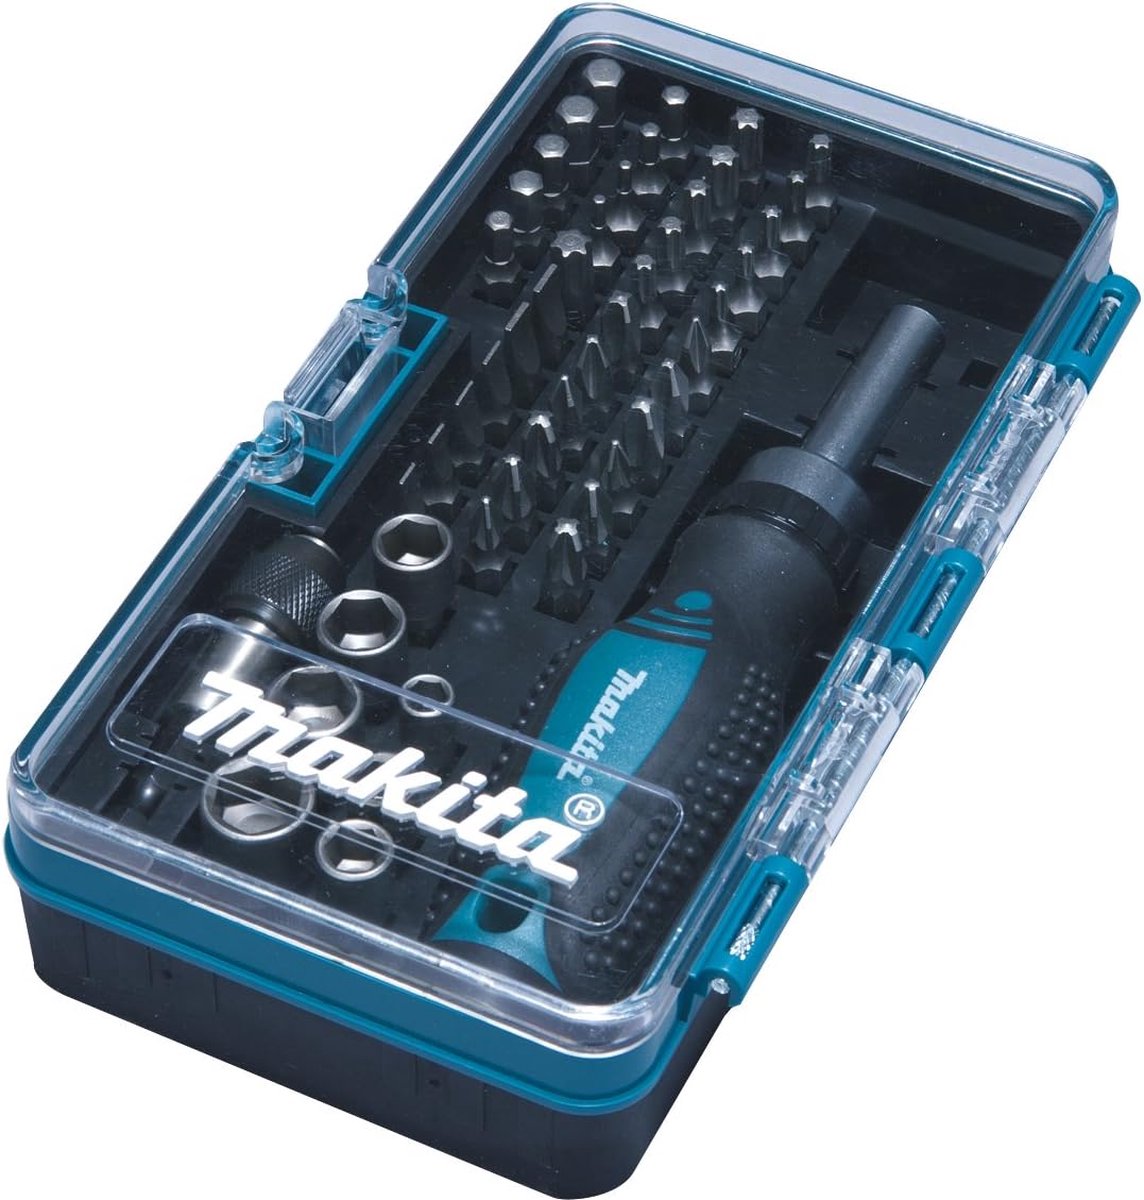 Makita B-36170 Caisse à outils pour mécanicien, Clés mixtes à cliquet